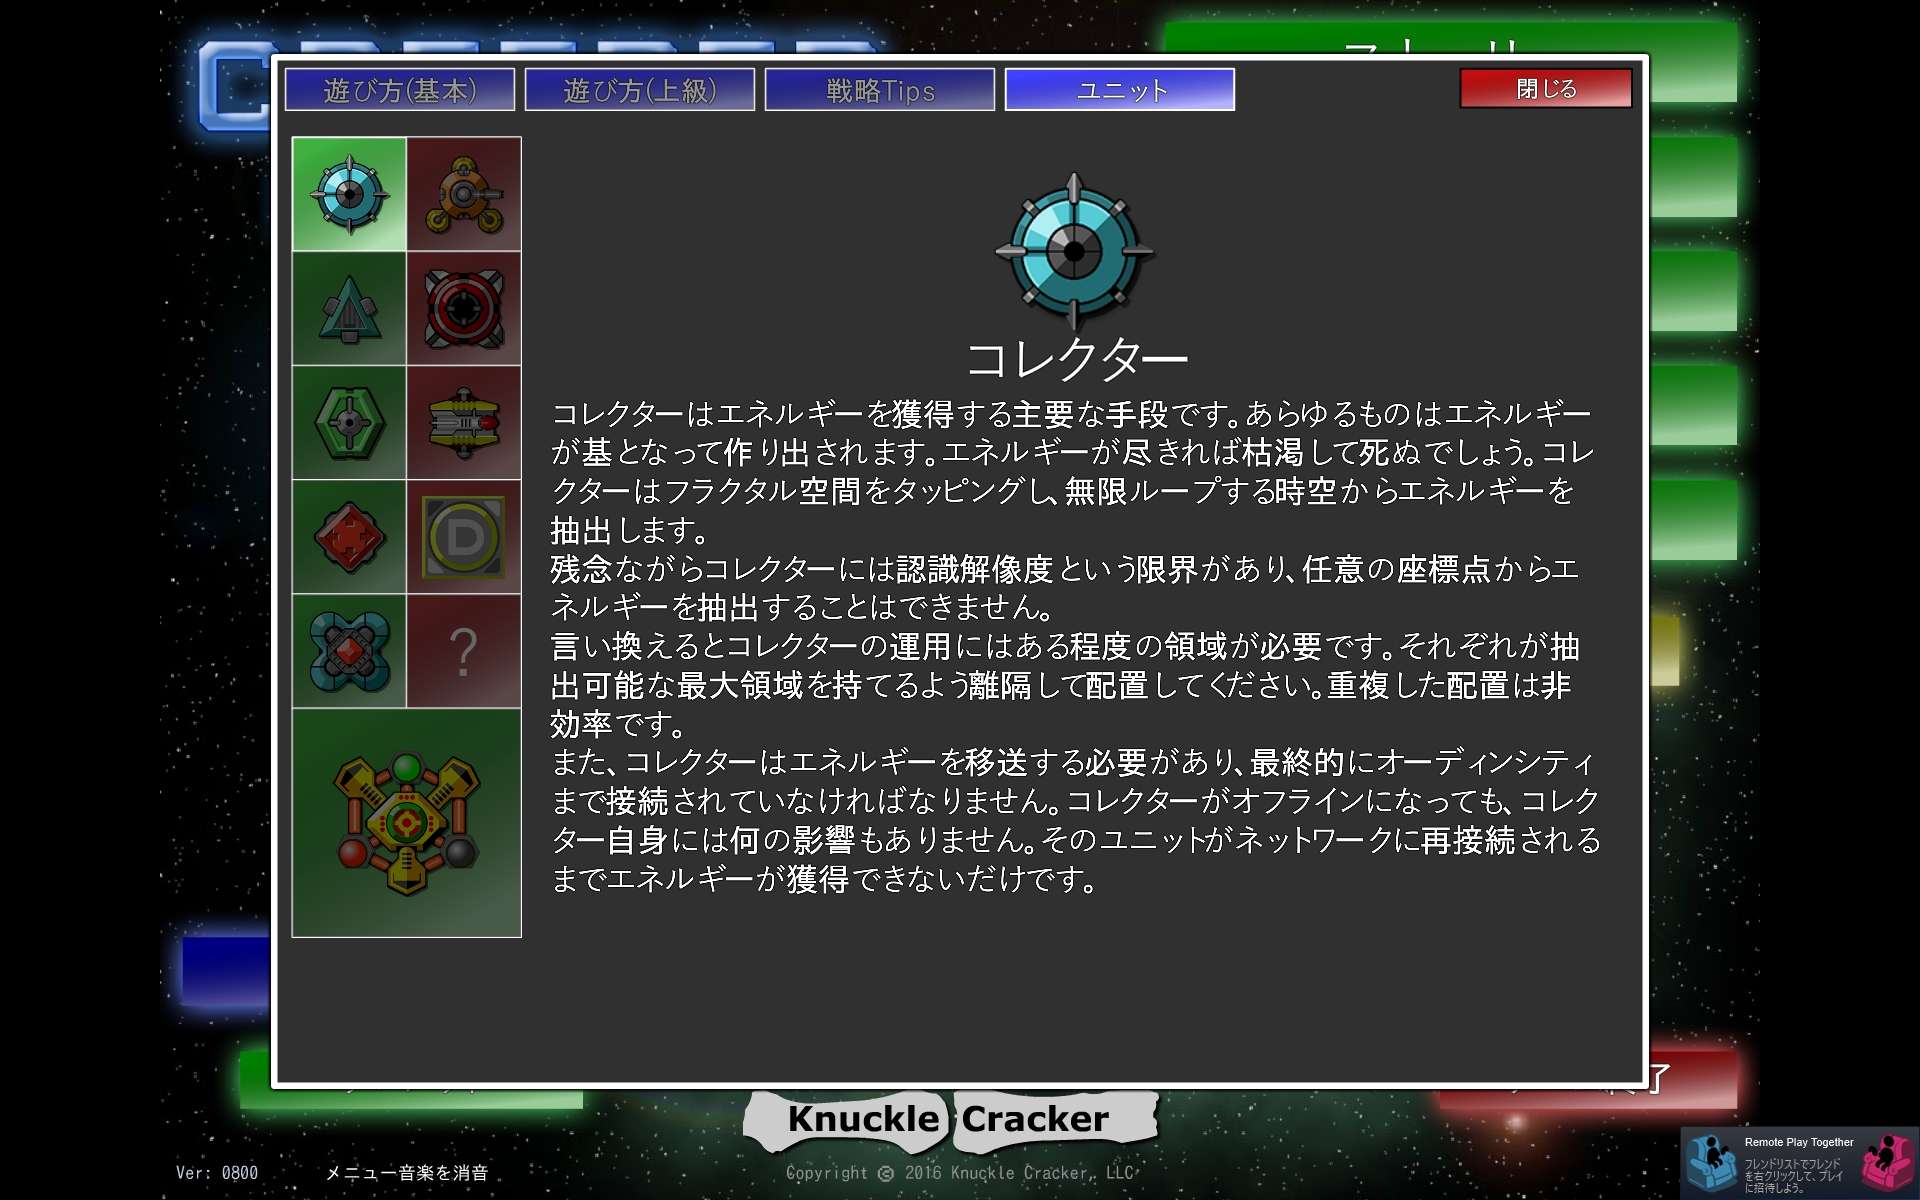 PC ゲーム Creeper World: Anniversary Edition 日本語化と JPEXS Free Flash Decompiler を使ったファイル解析メモ、日本語化後のスクリーンショット